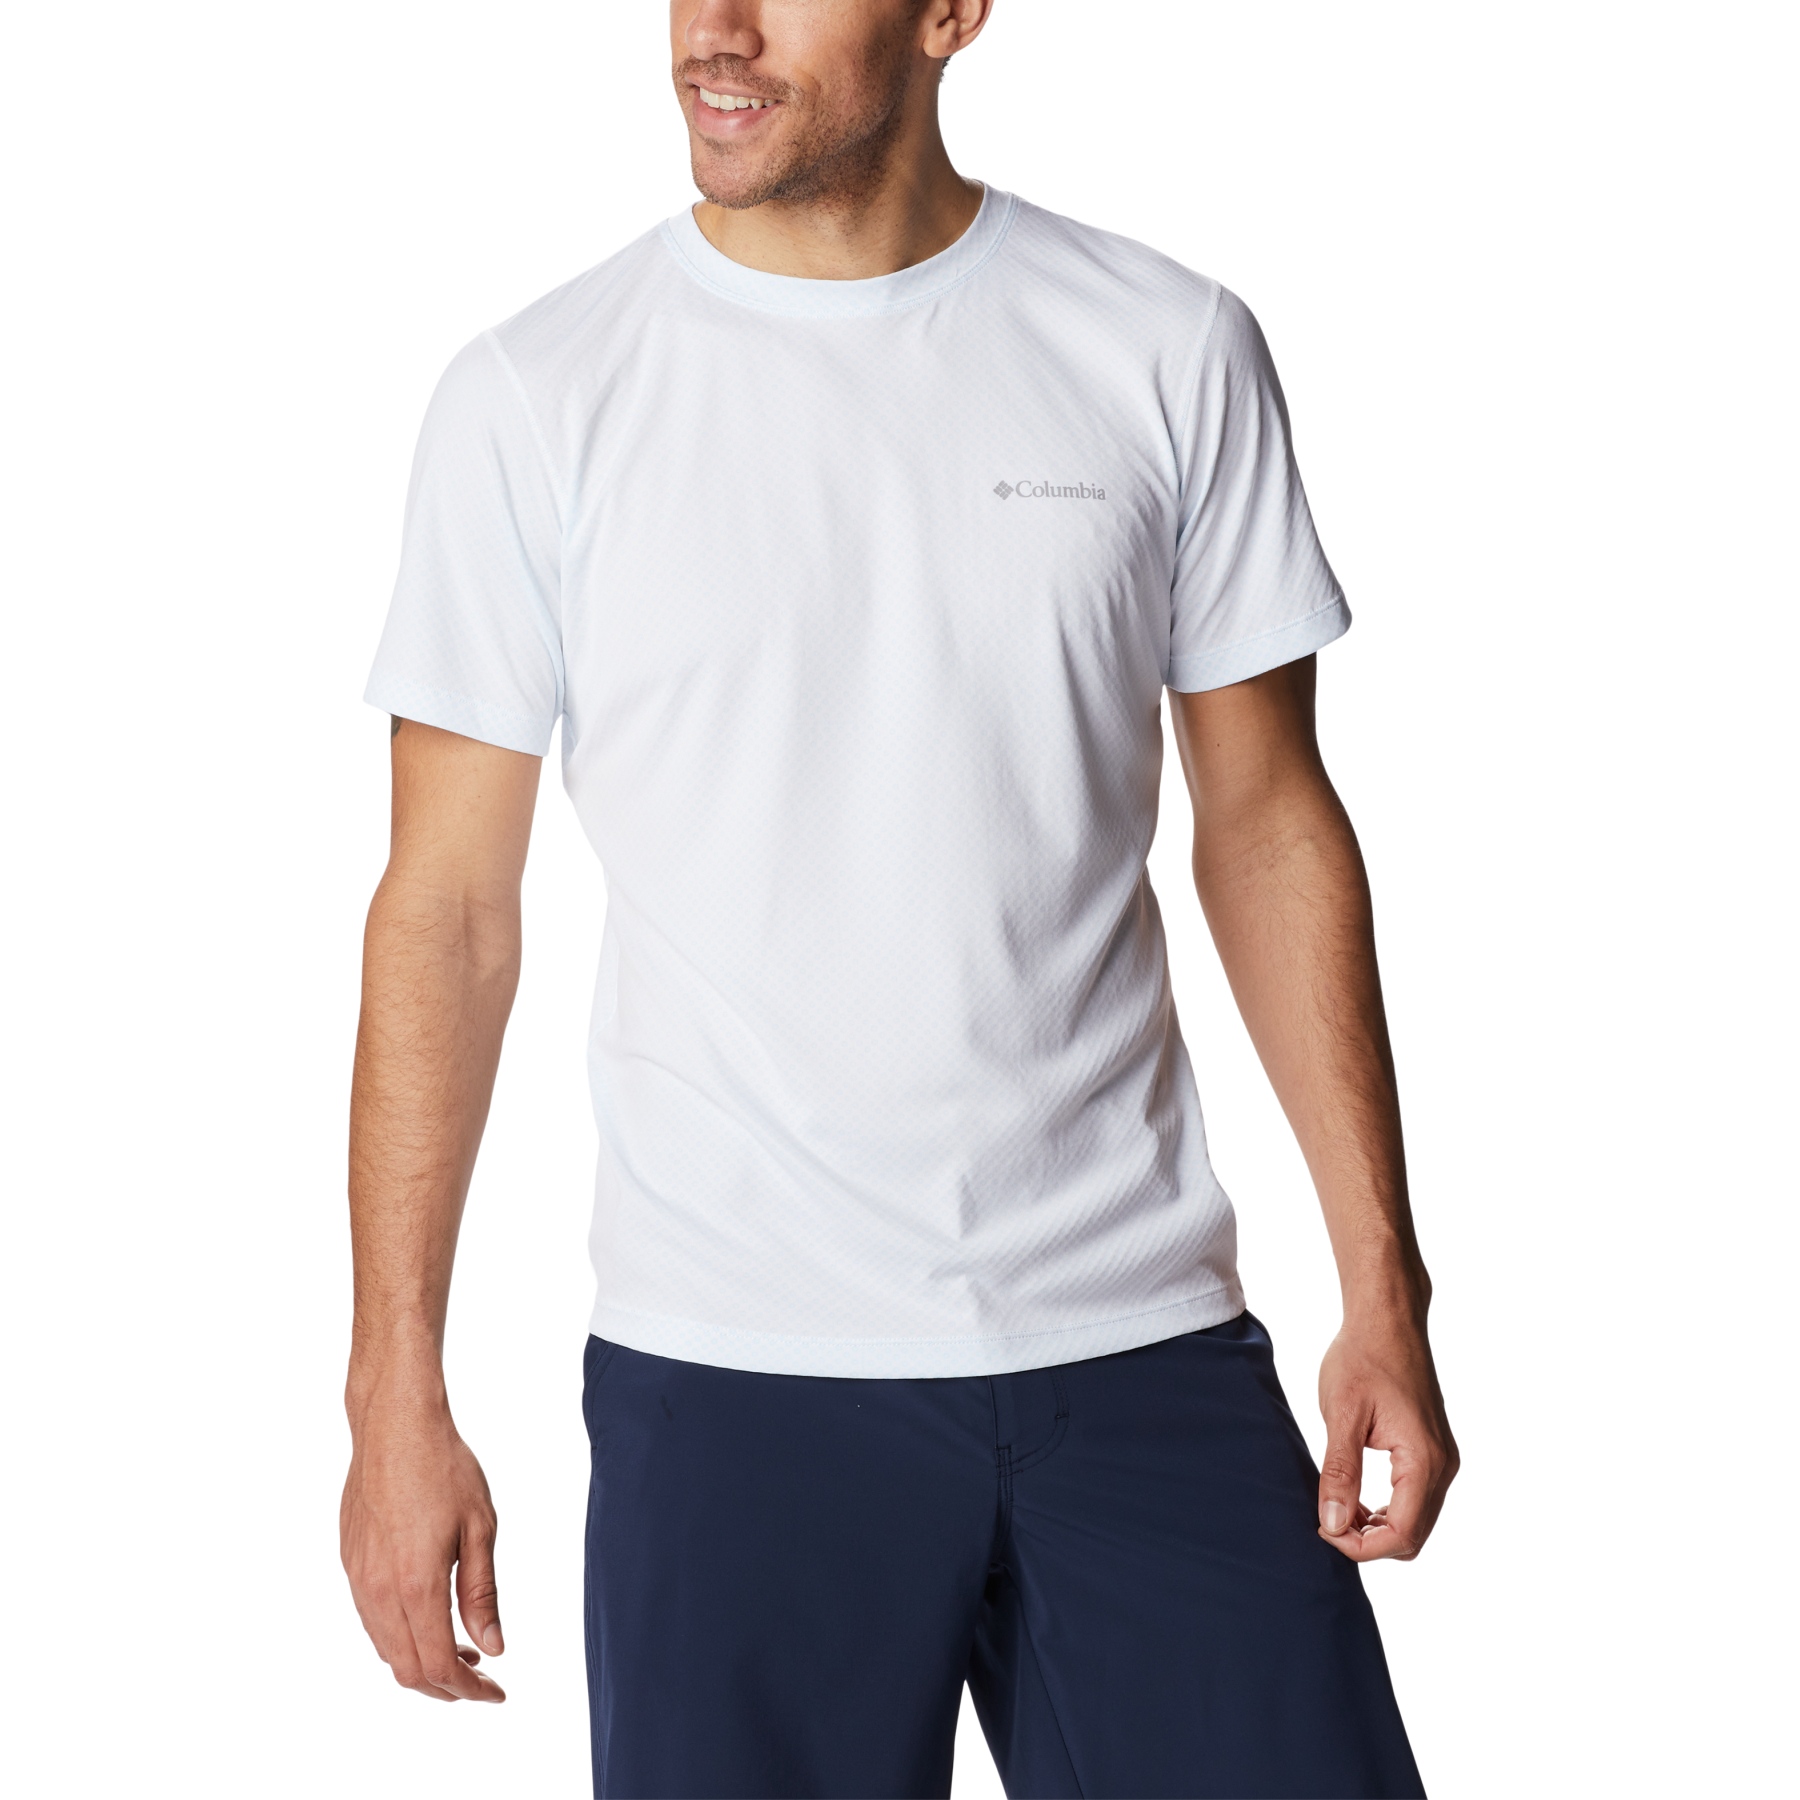 Produktbild von Columbia Zero Rules T-Shirt Herren - Weiß